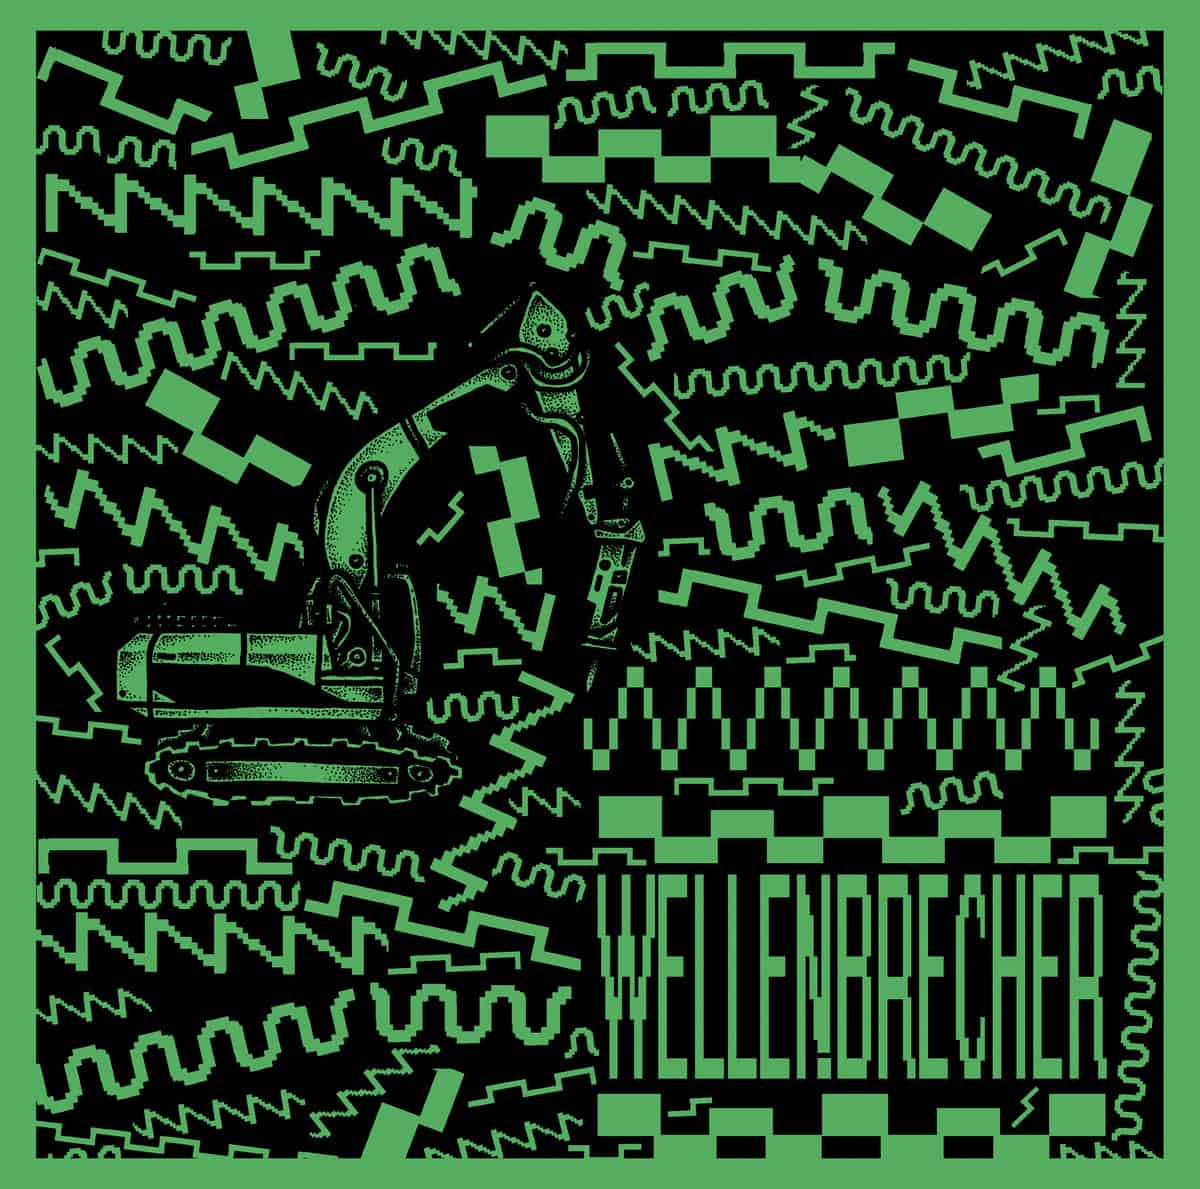 Download Wellen.Brecher - Hitmaschine on Electrobuzz